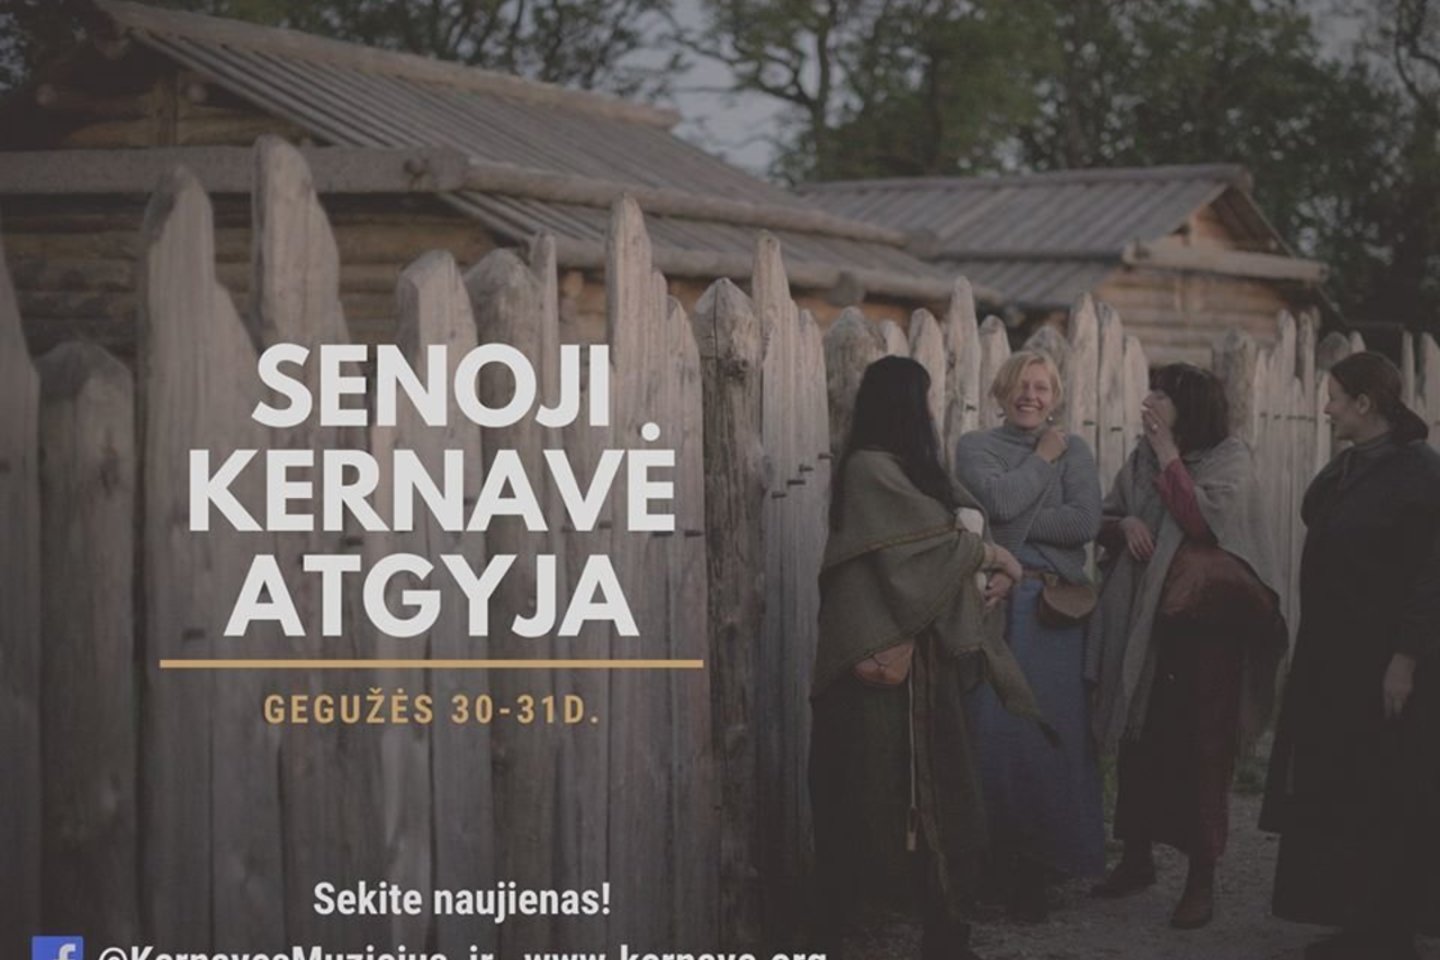  Į renginį gegužės 30-31 d. sugužės amatininkai iš įvairių Lietuvos kampelių.<br> Organizatorių nuotr.